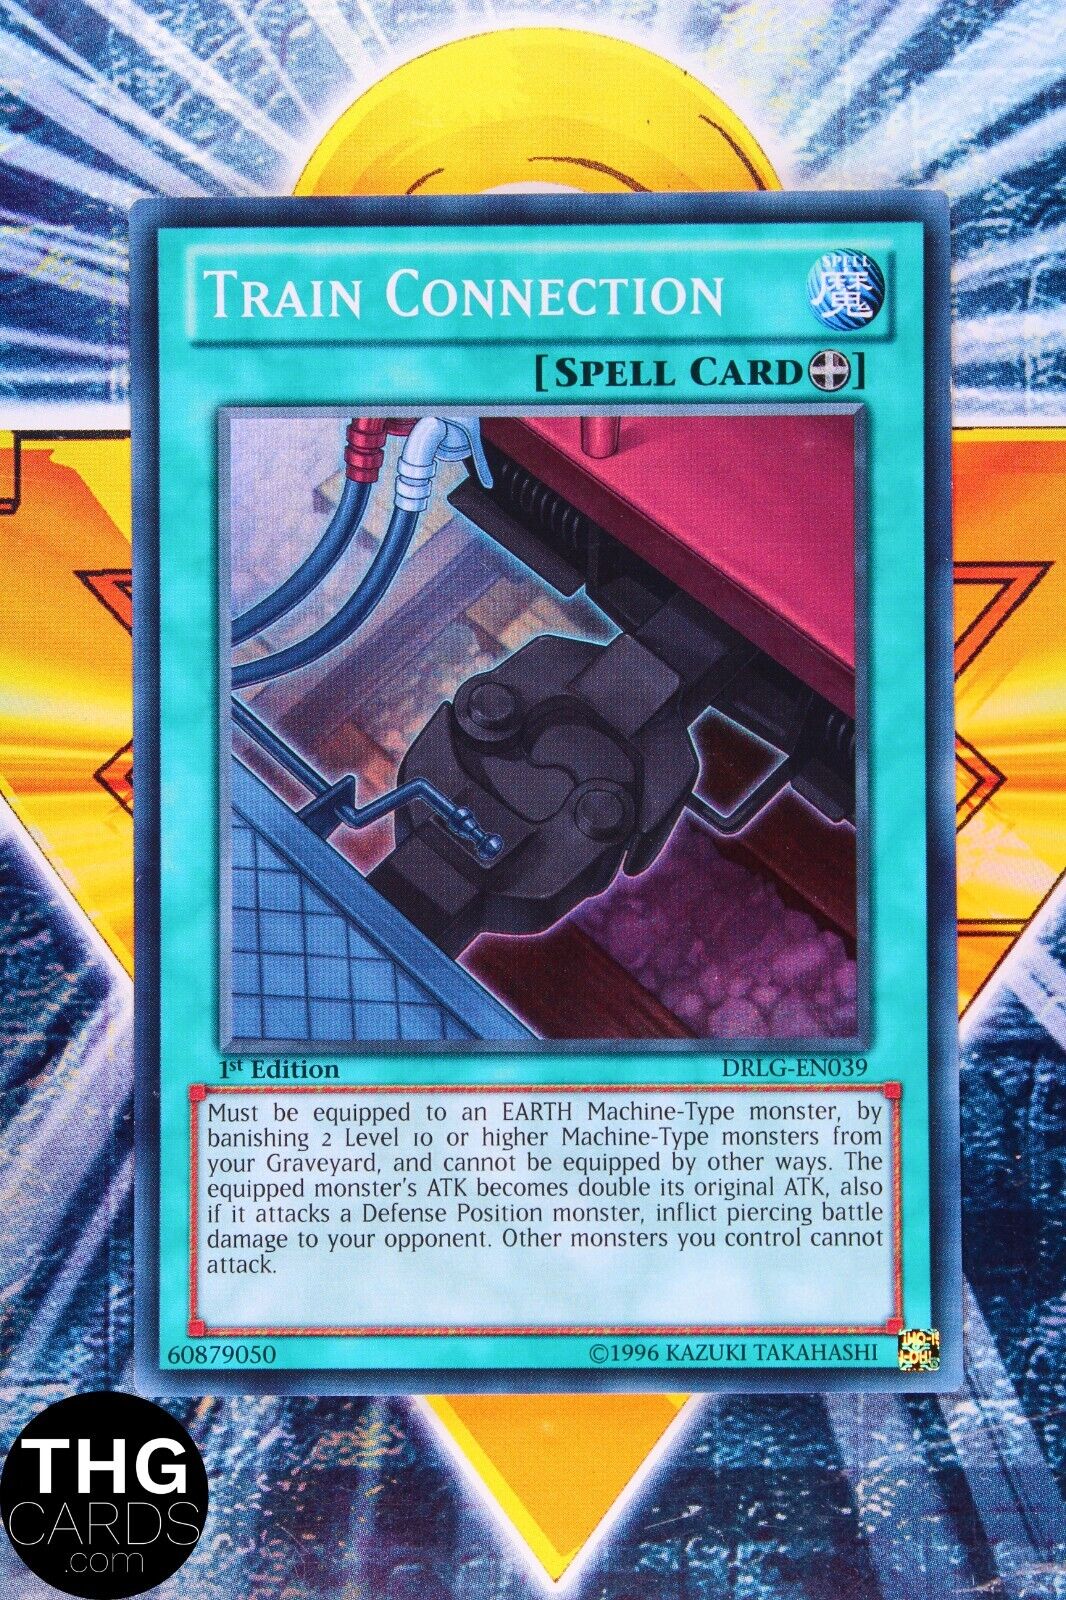 Train Connection DRLG-EN039 1st Edition Super Rare Yugioh Card